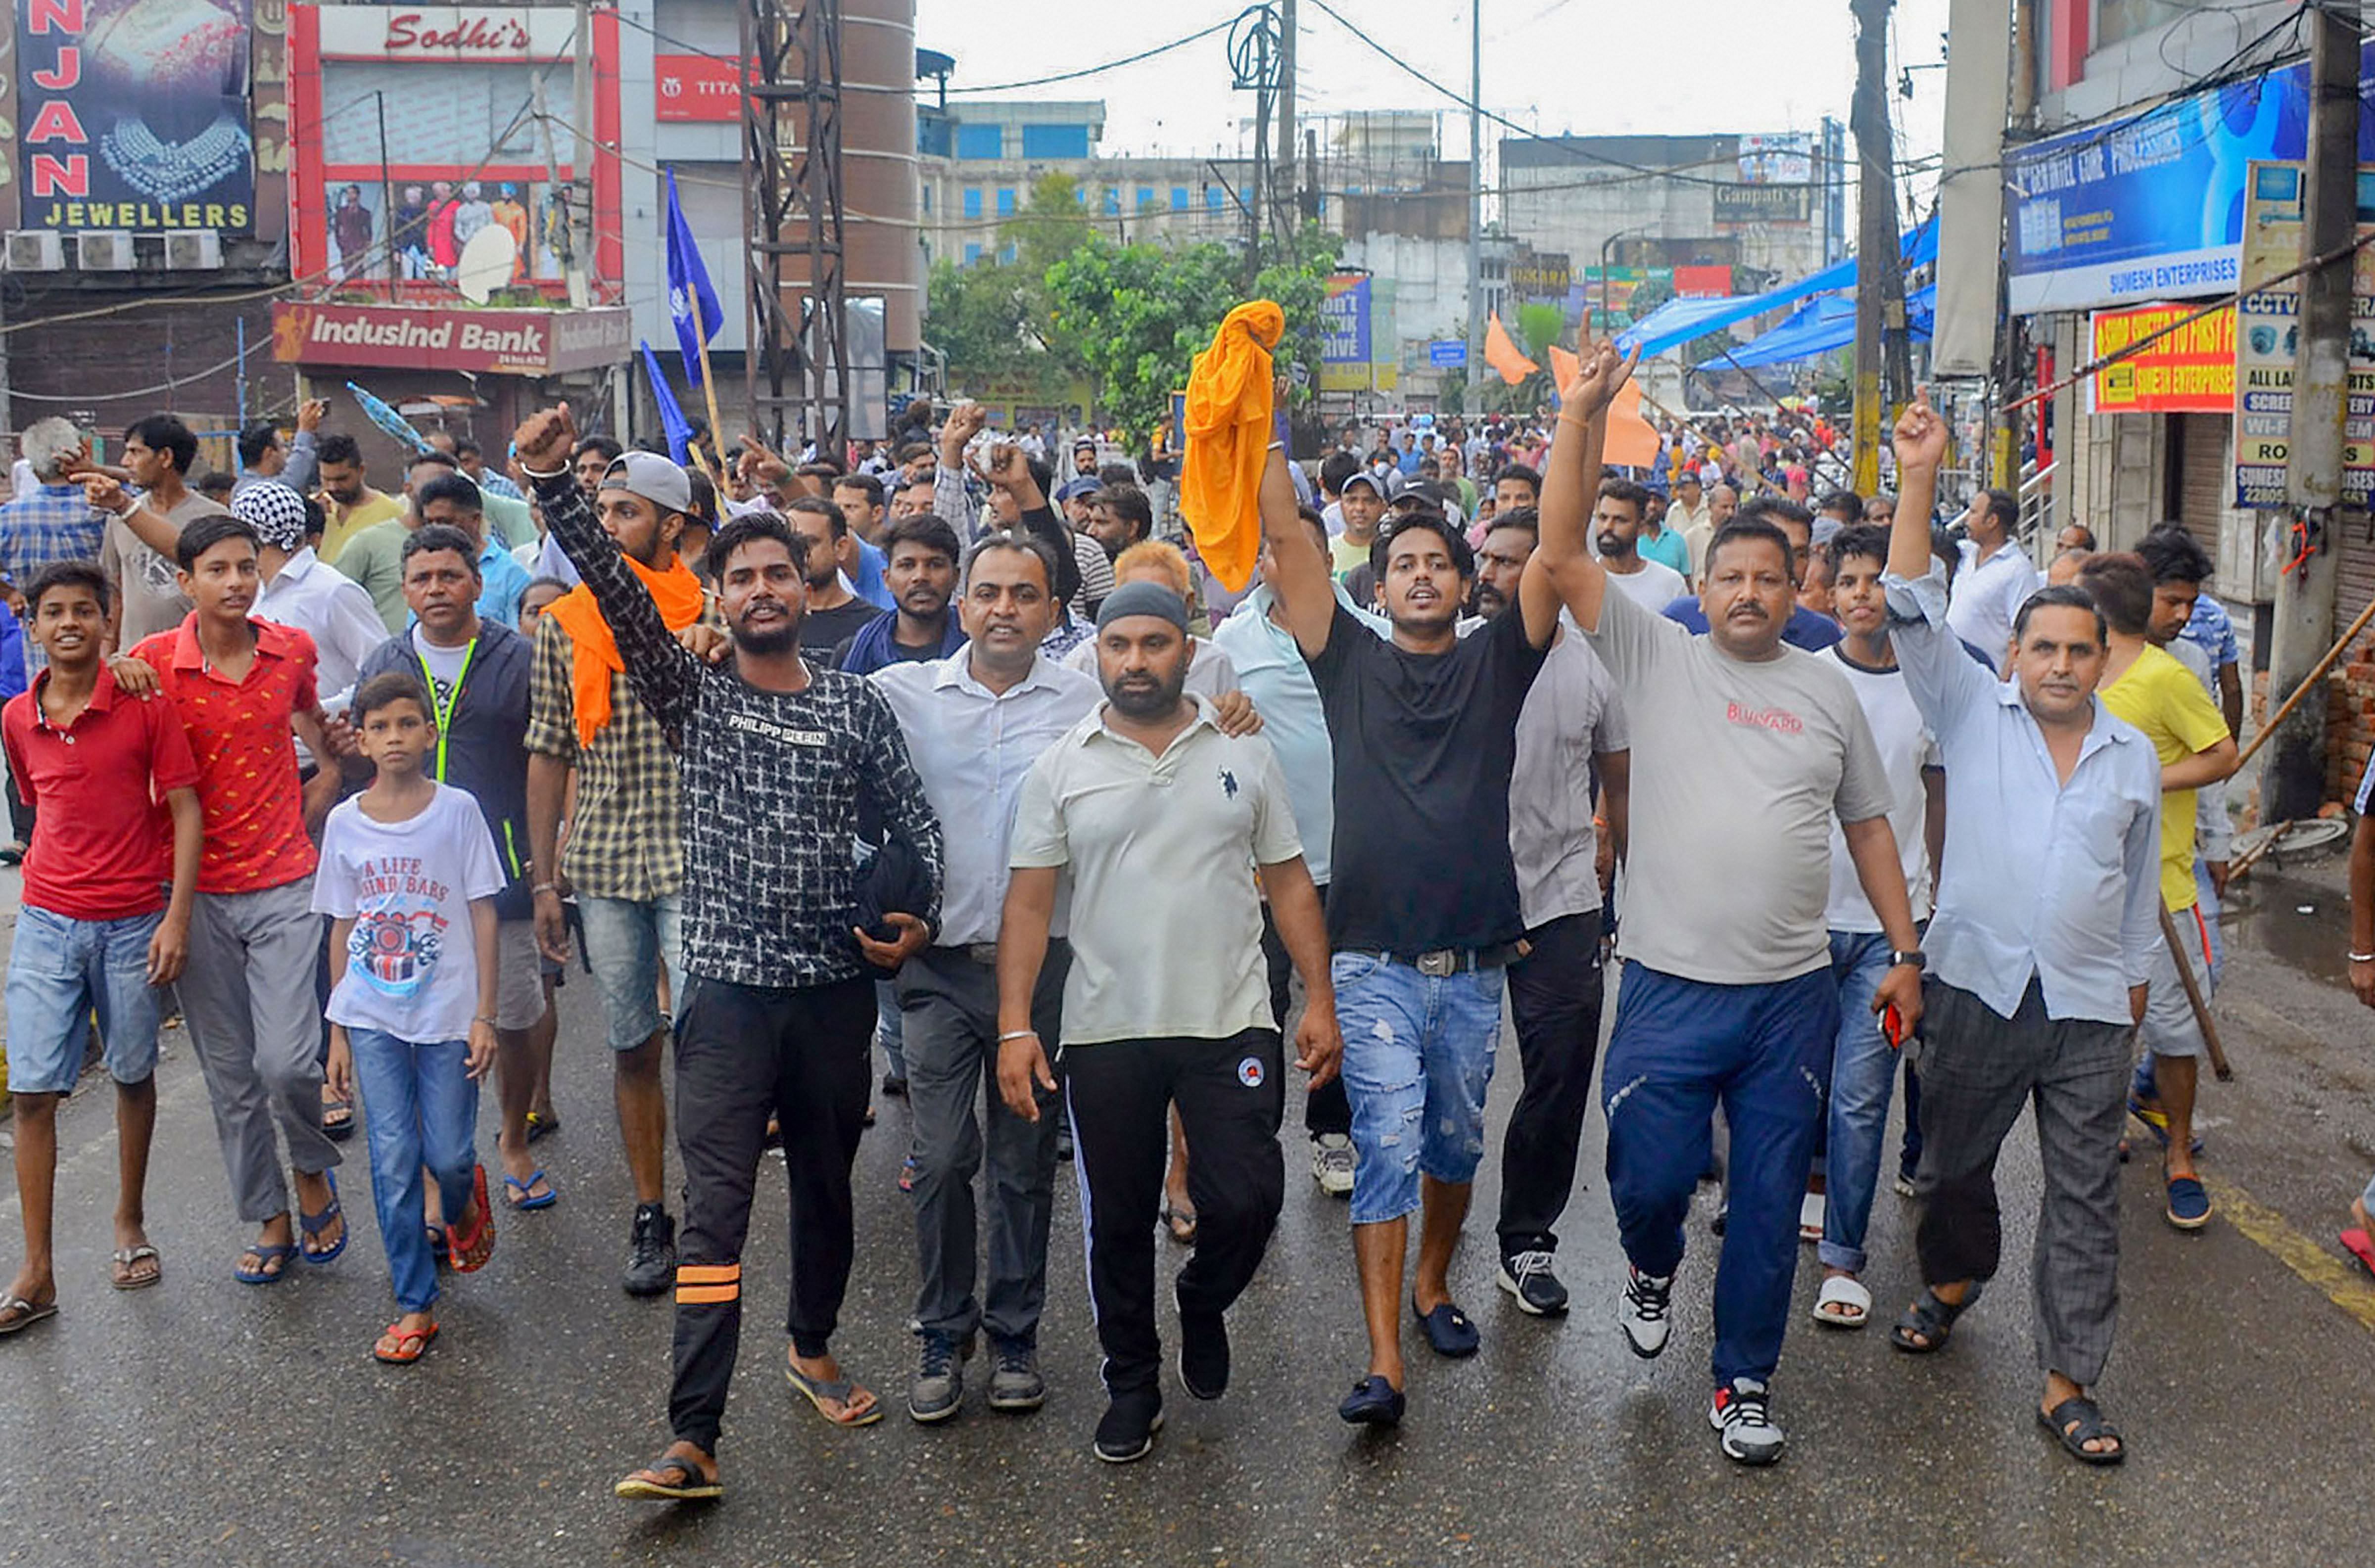 Members of Guru Ravidas Sabha during a protest march over demolishment of Guru Ravidas temple in Delhi. (PTI Photo)